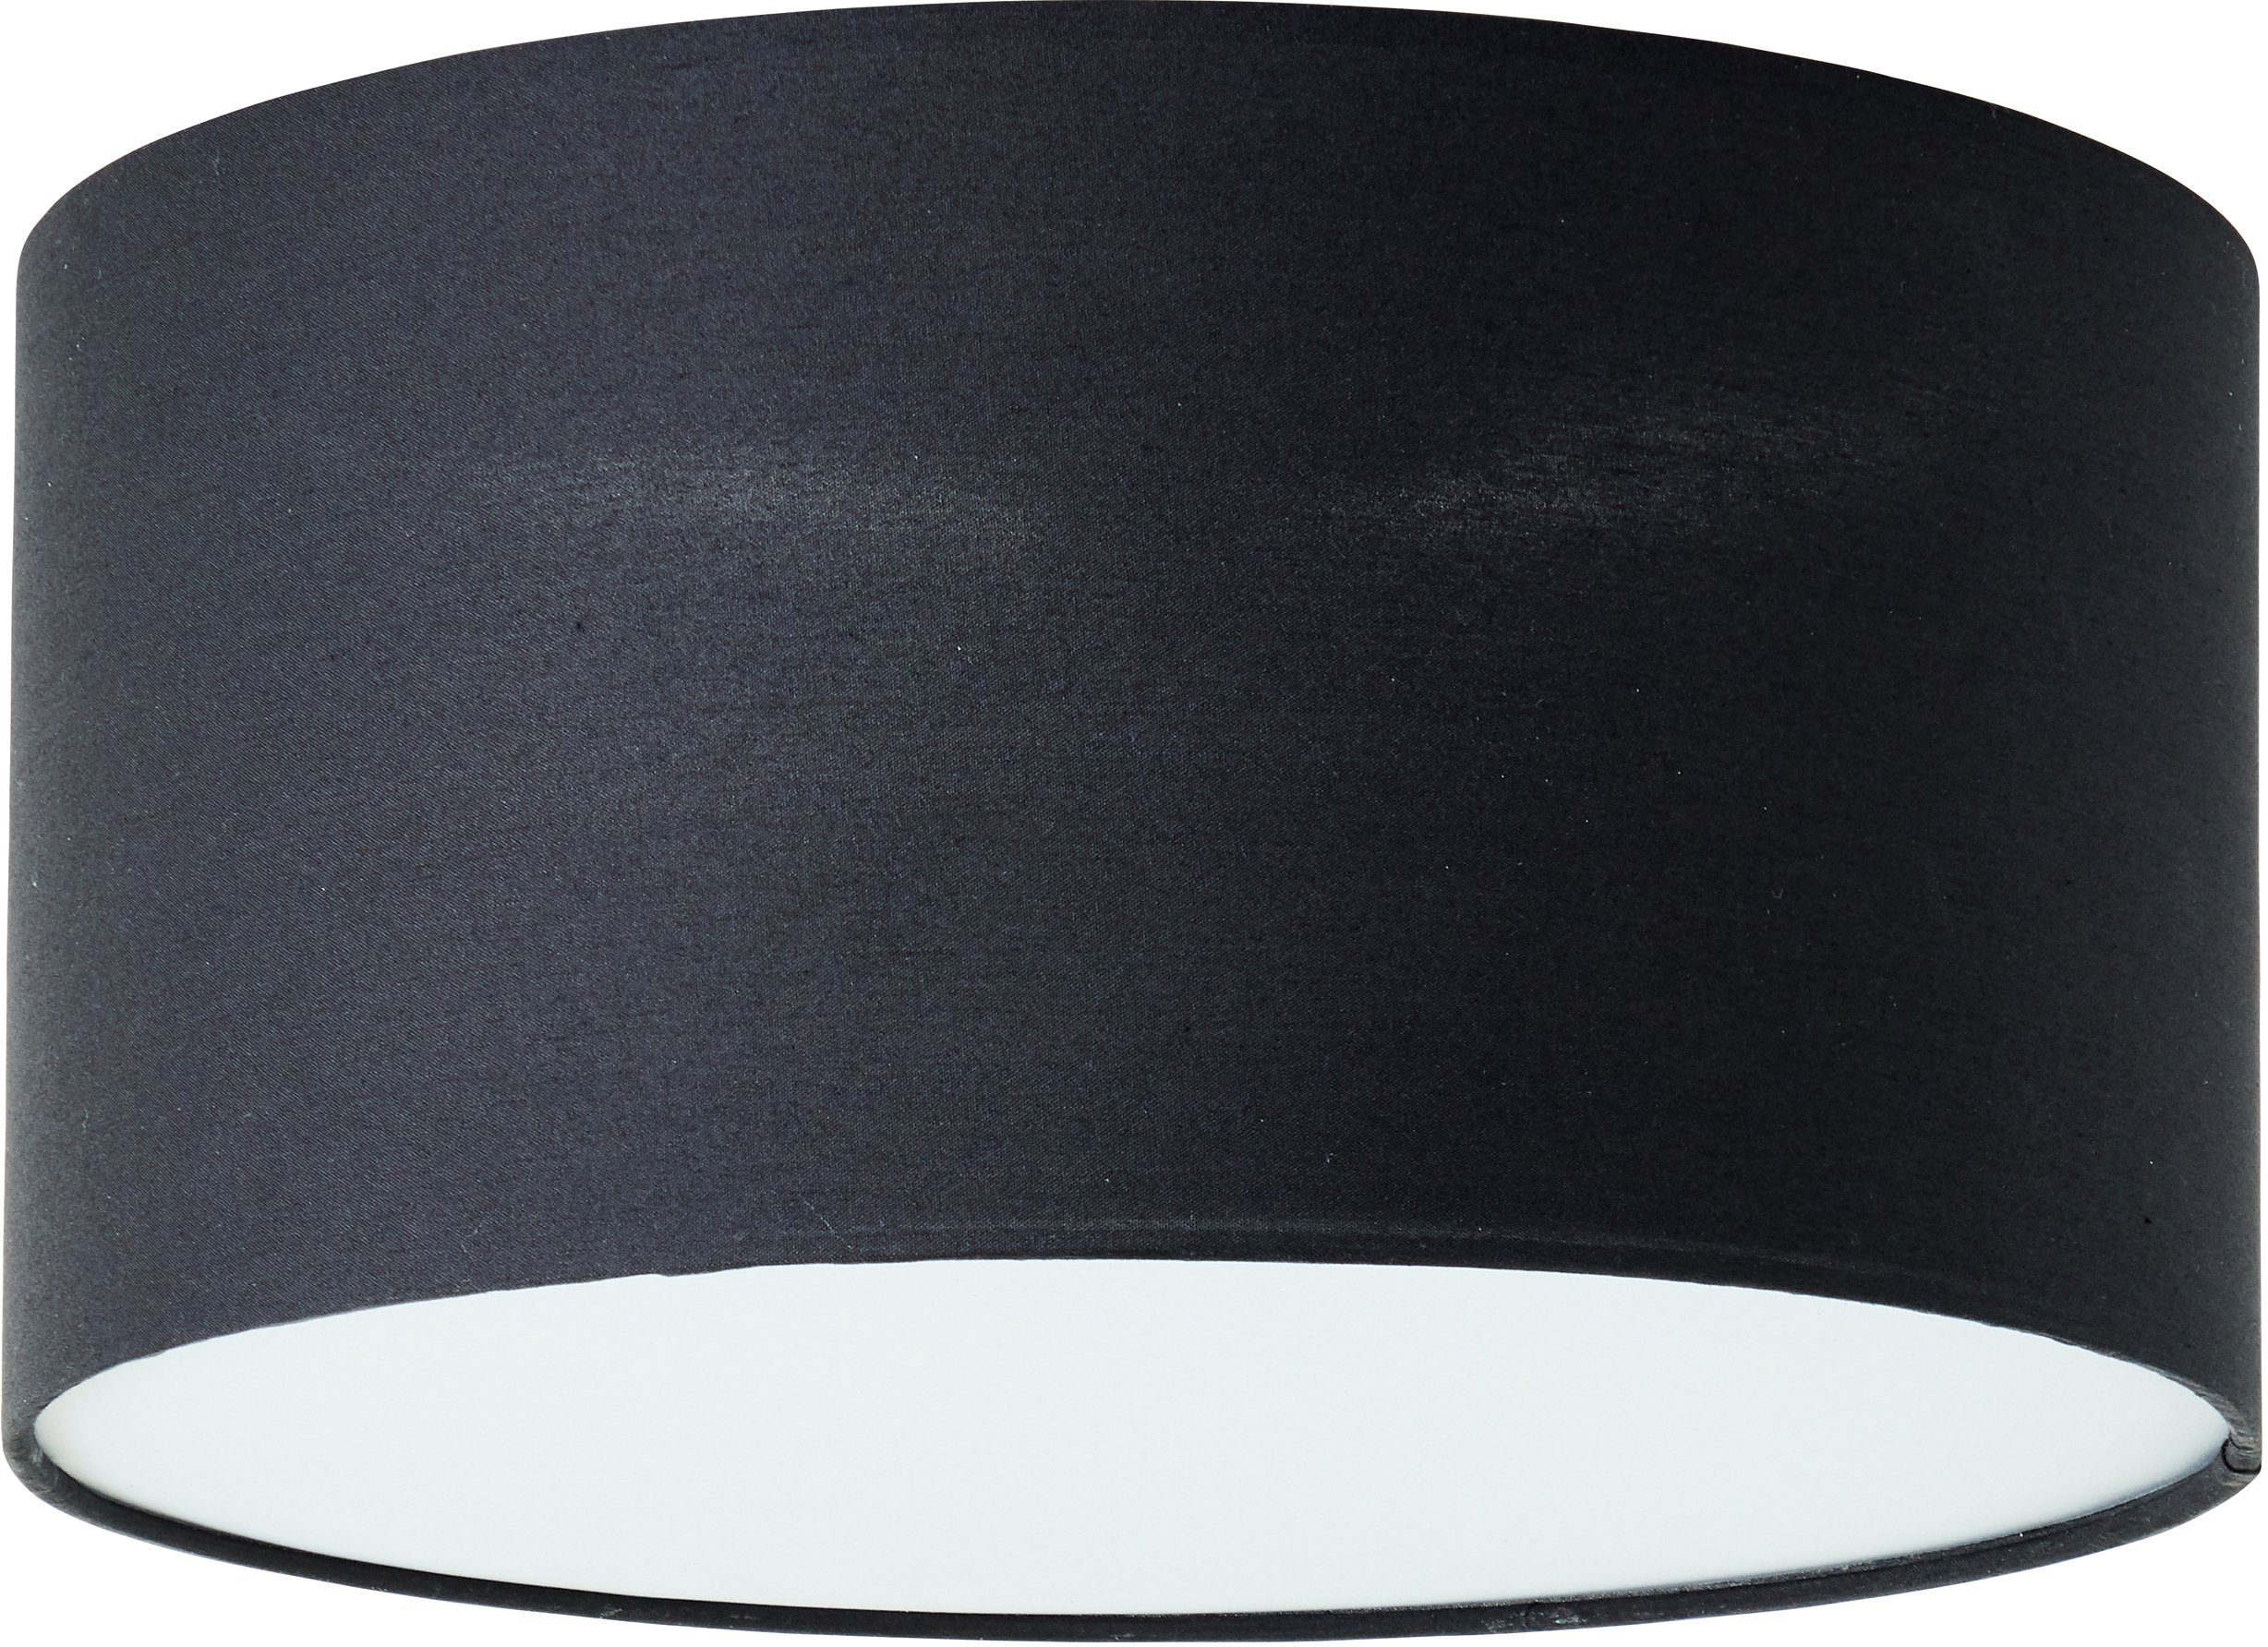 Places of Style Deckenleuchte mit schwarz Textilschirm ohne Elijah, 30cm Ø Deckenlampe Leuchtmittel